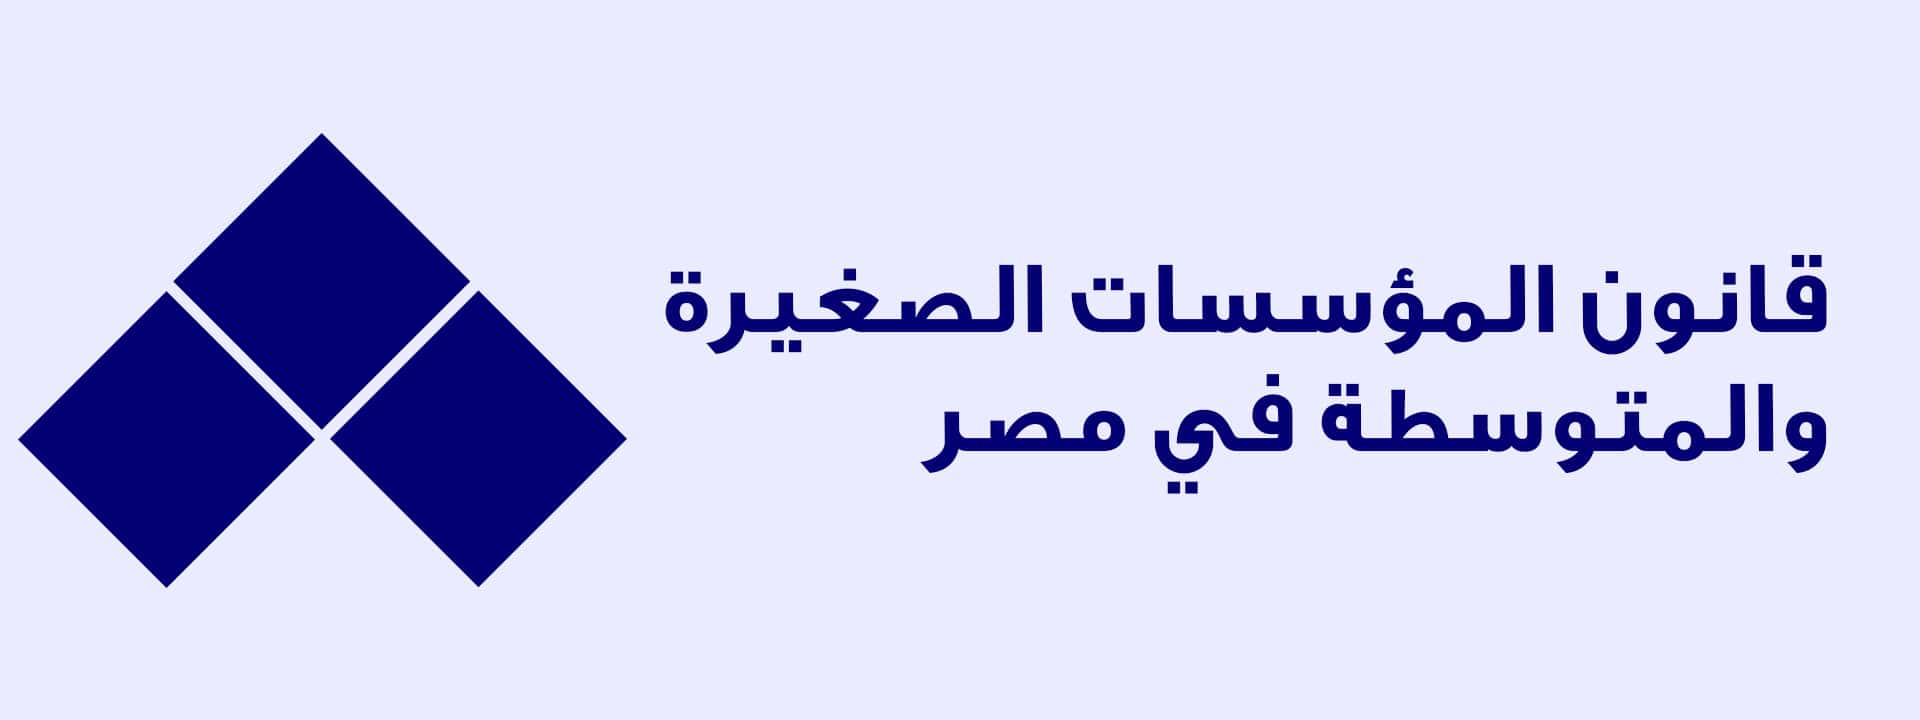 قانون المؤسسات الصغيرة والمتوسطة في مصر